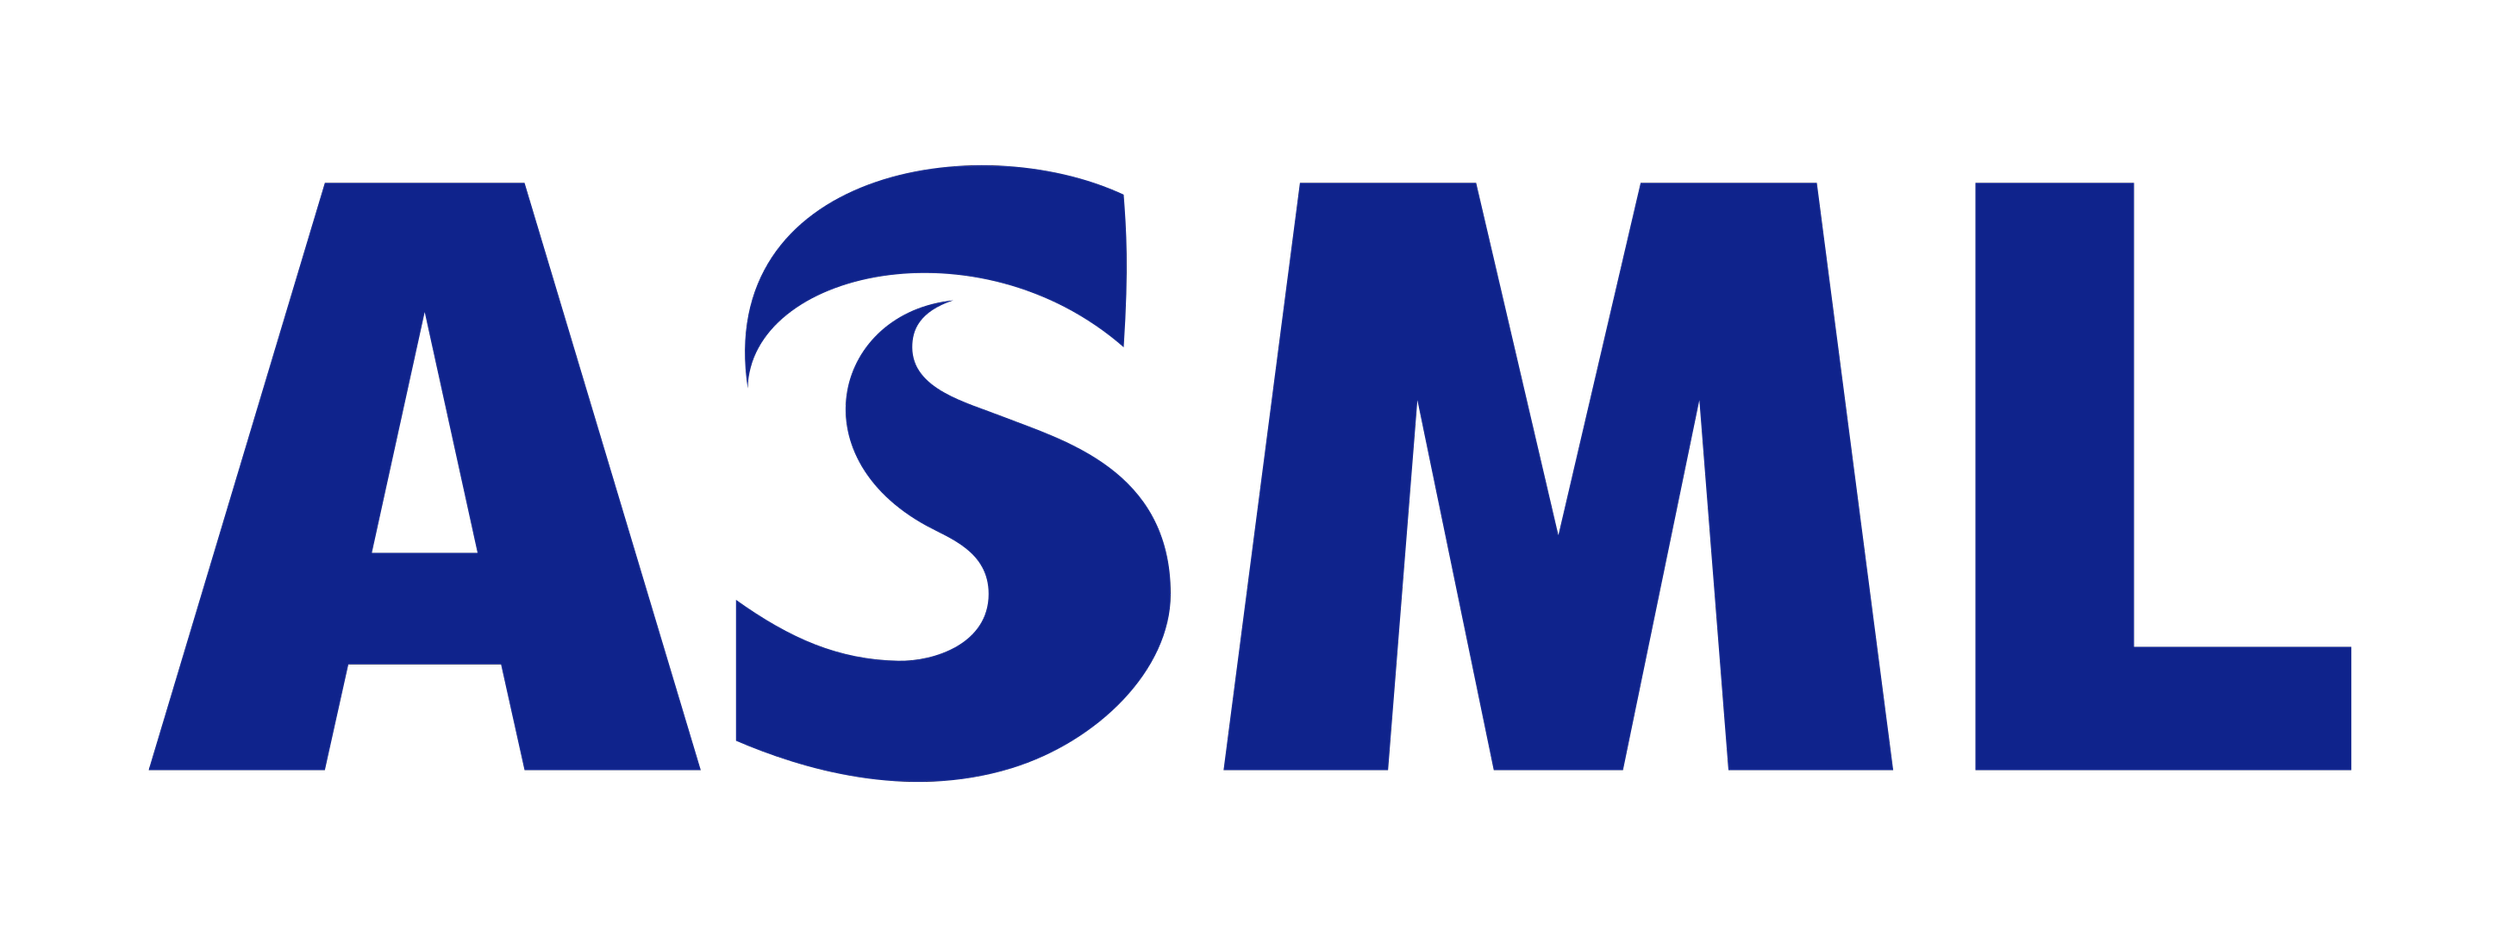 Logo_ASML_crop.png